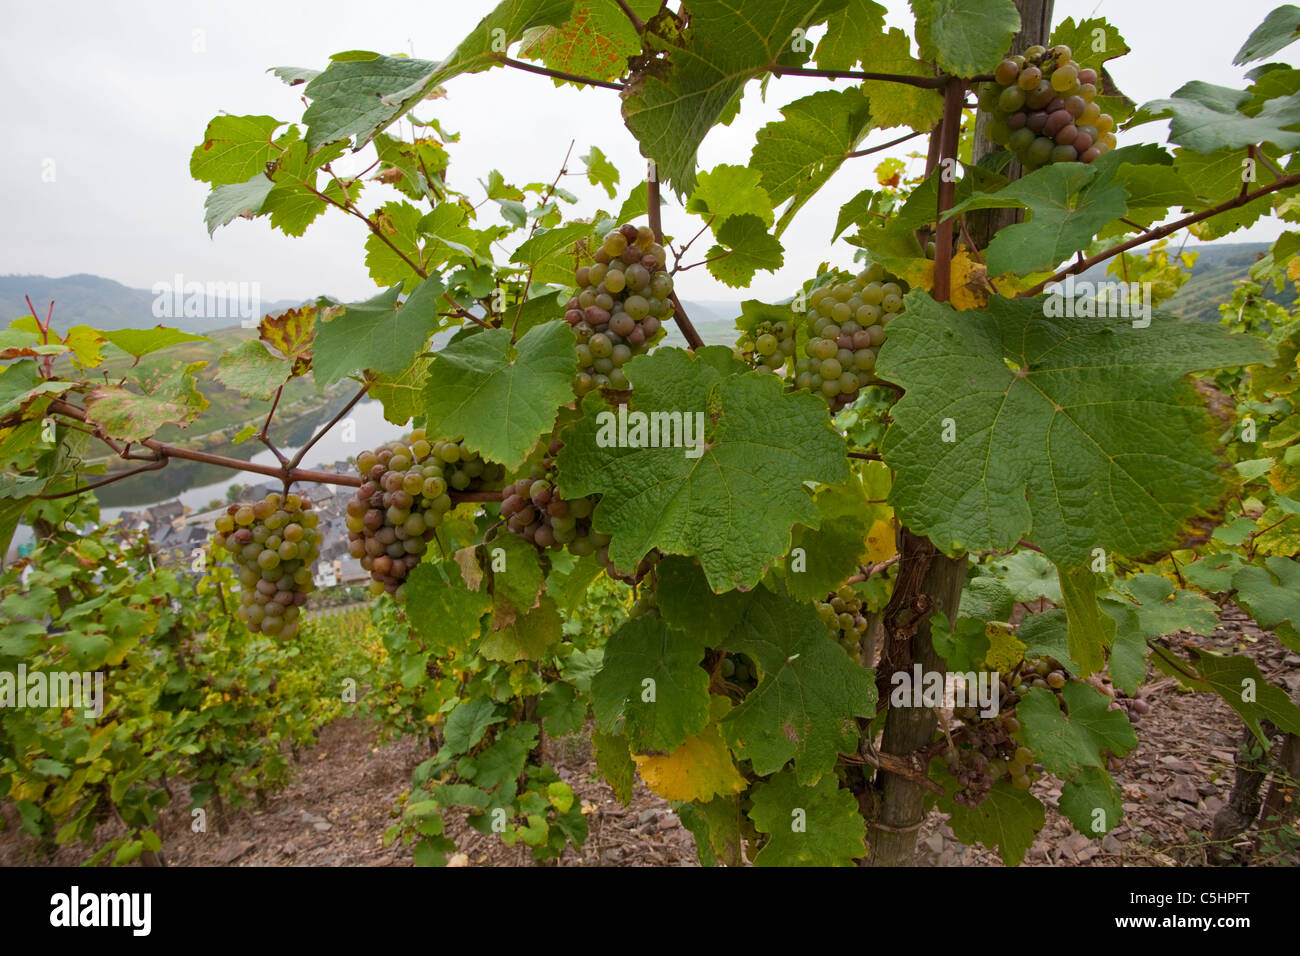 Weinreben, Weintrauben auf dem Calmont, Moselschleife bei Bremm, Vines on the Calmont, near the village Bremm Stock Photo